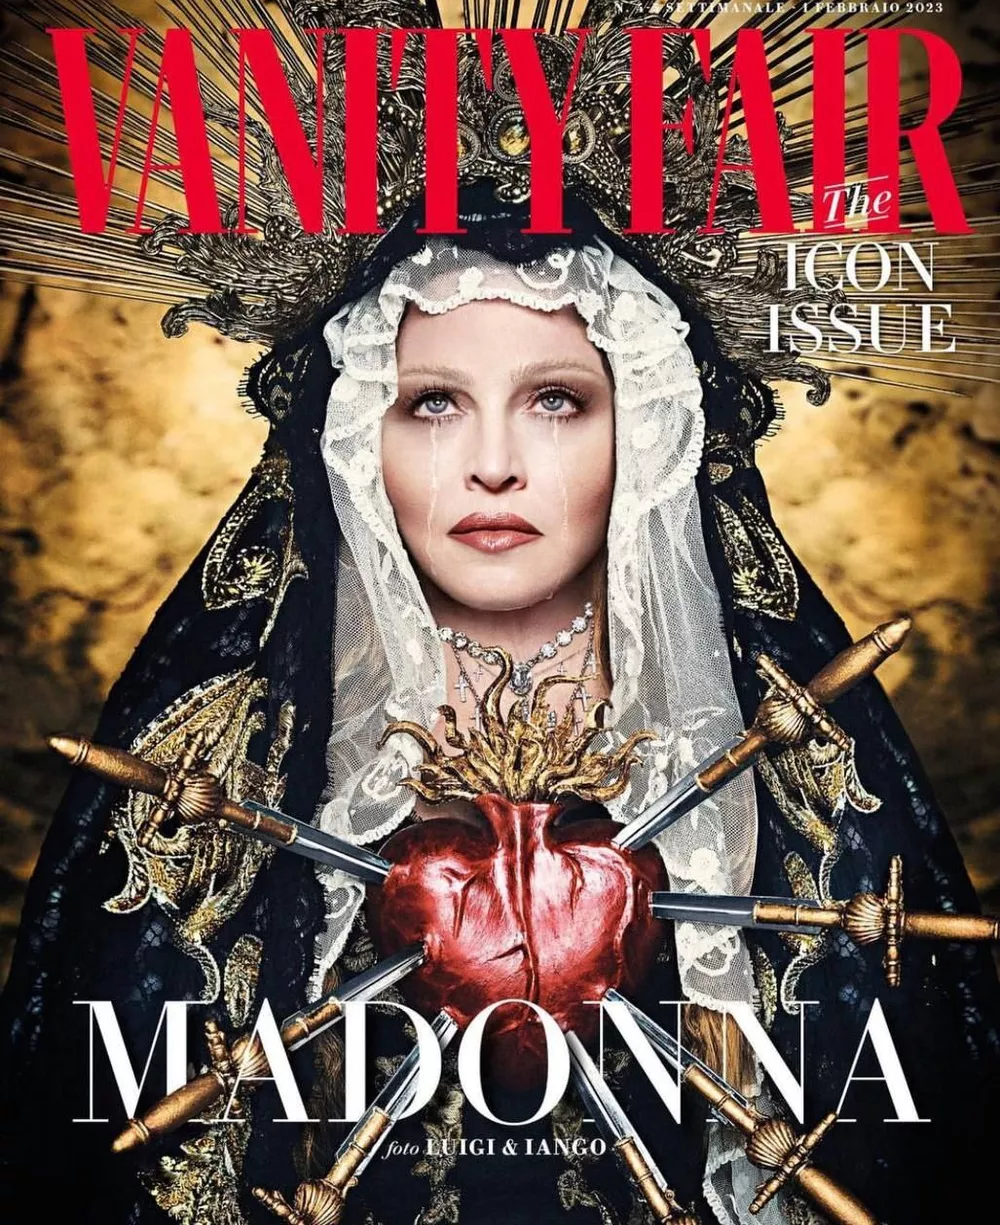 Я верю в идею чего-то большего: Мадонна снялась для обложки Vanity Fair и рассказала о своем мировоззрении